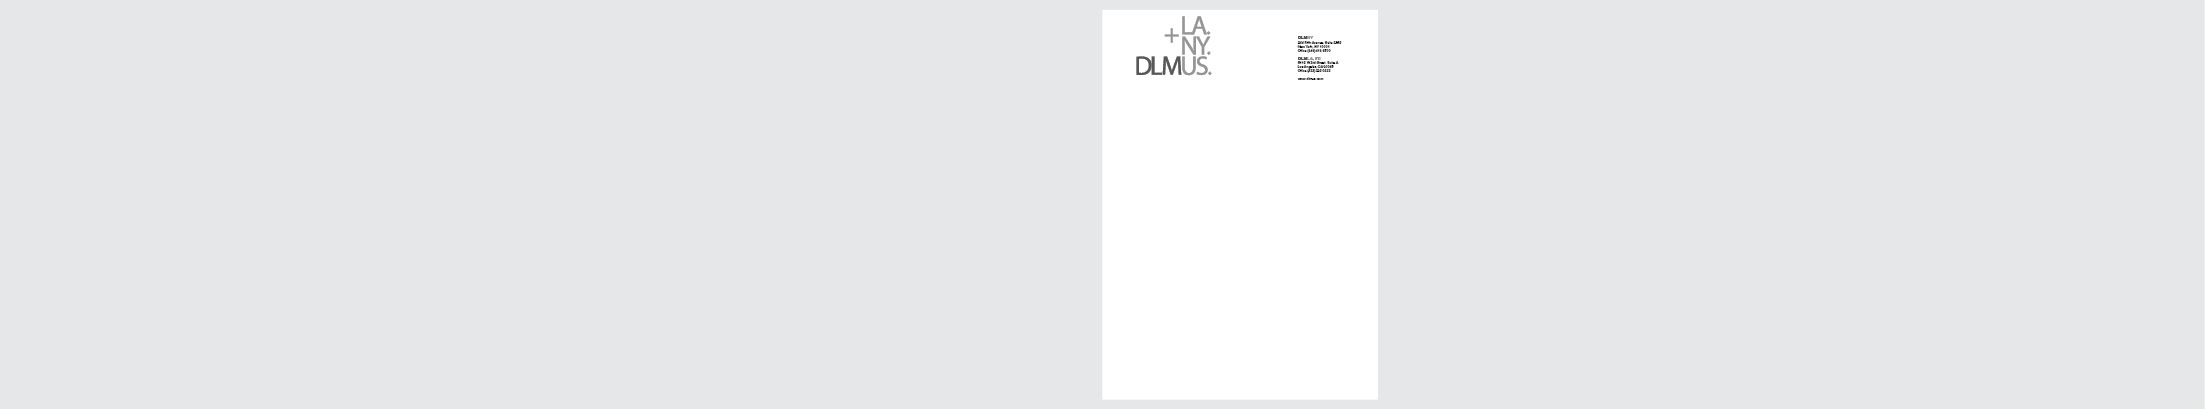 DLMUS 2015 Branding Package